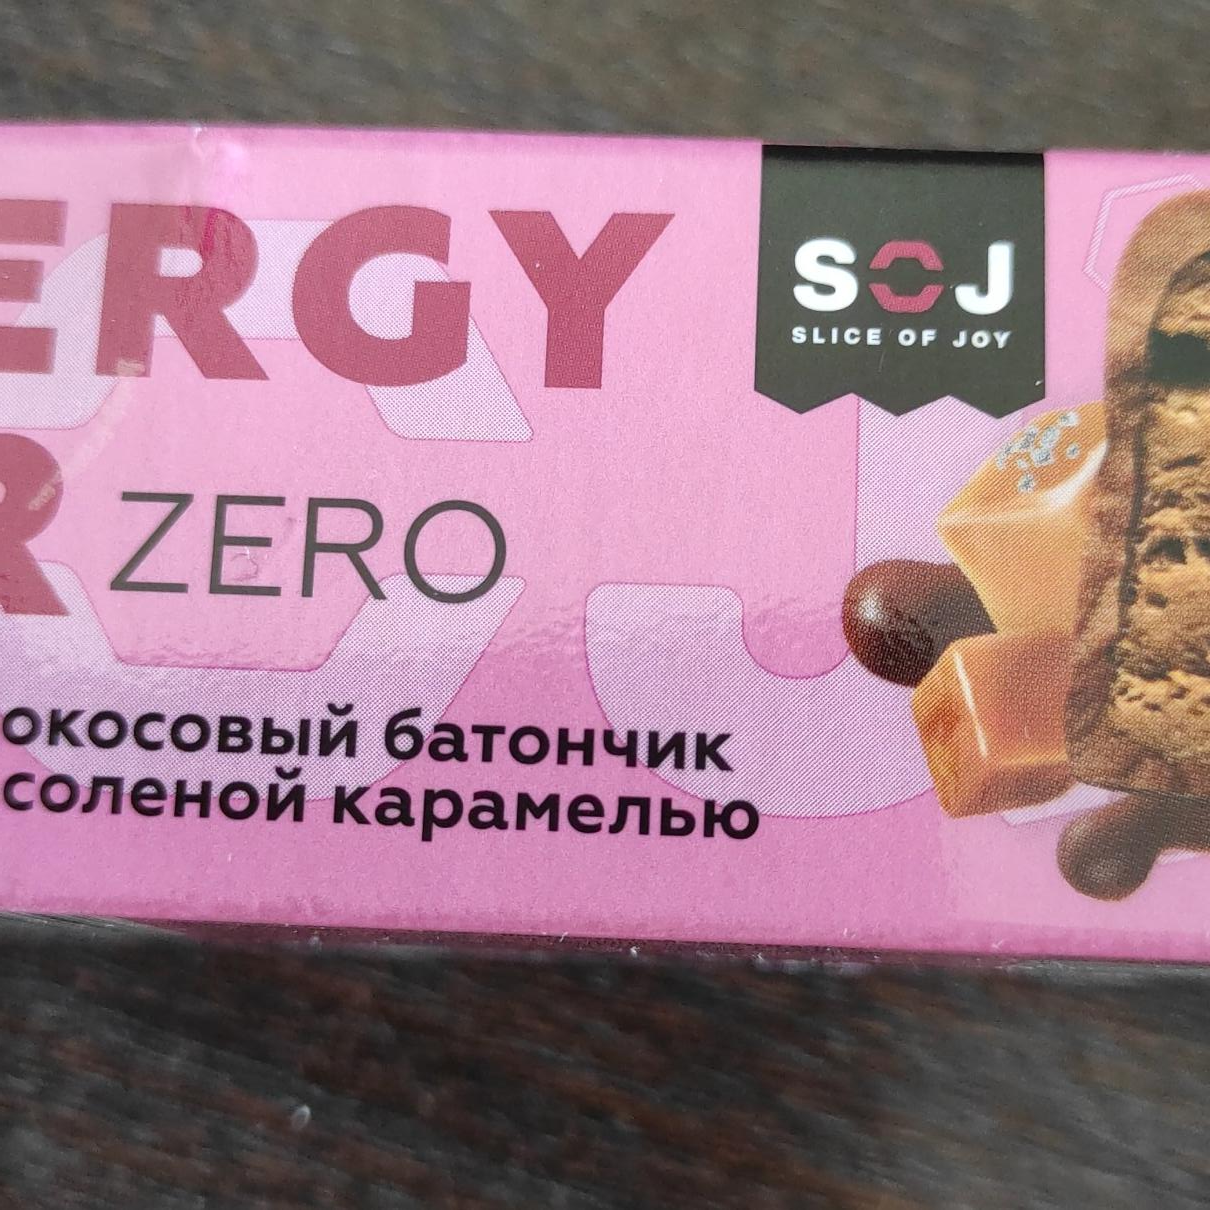 Фото - Кокосовый батончик с соленой карамелью Energy bar zero SOJ